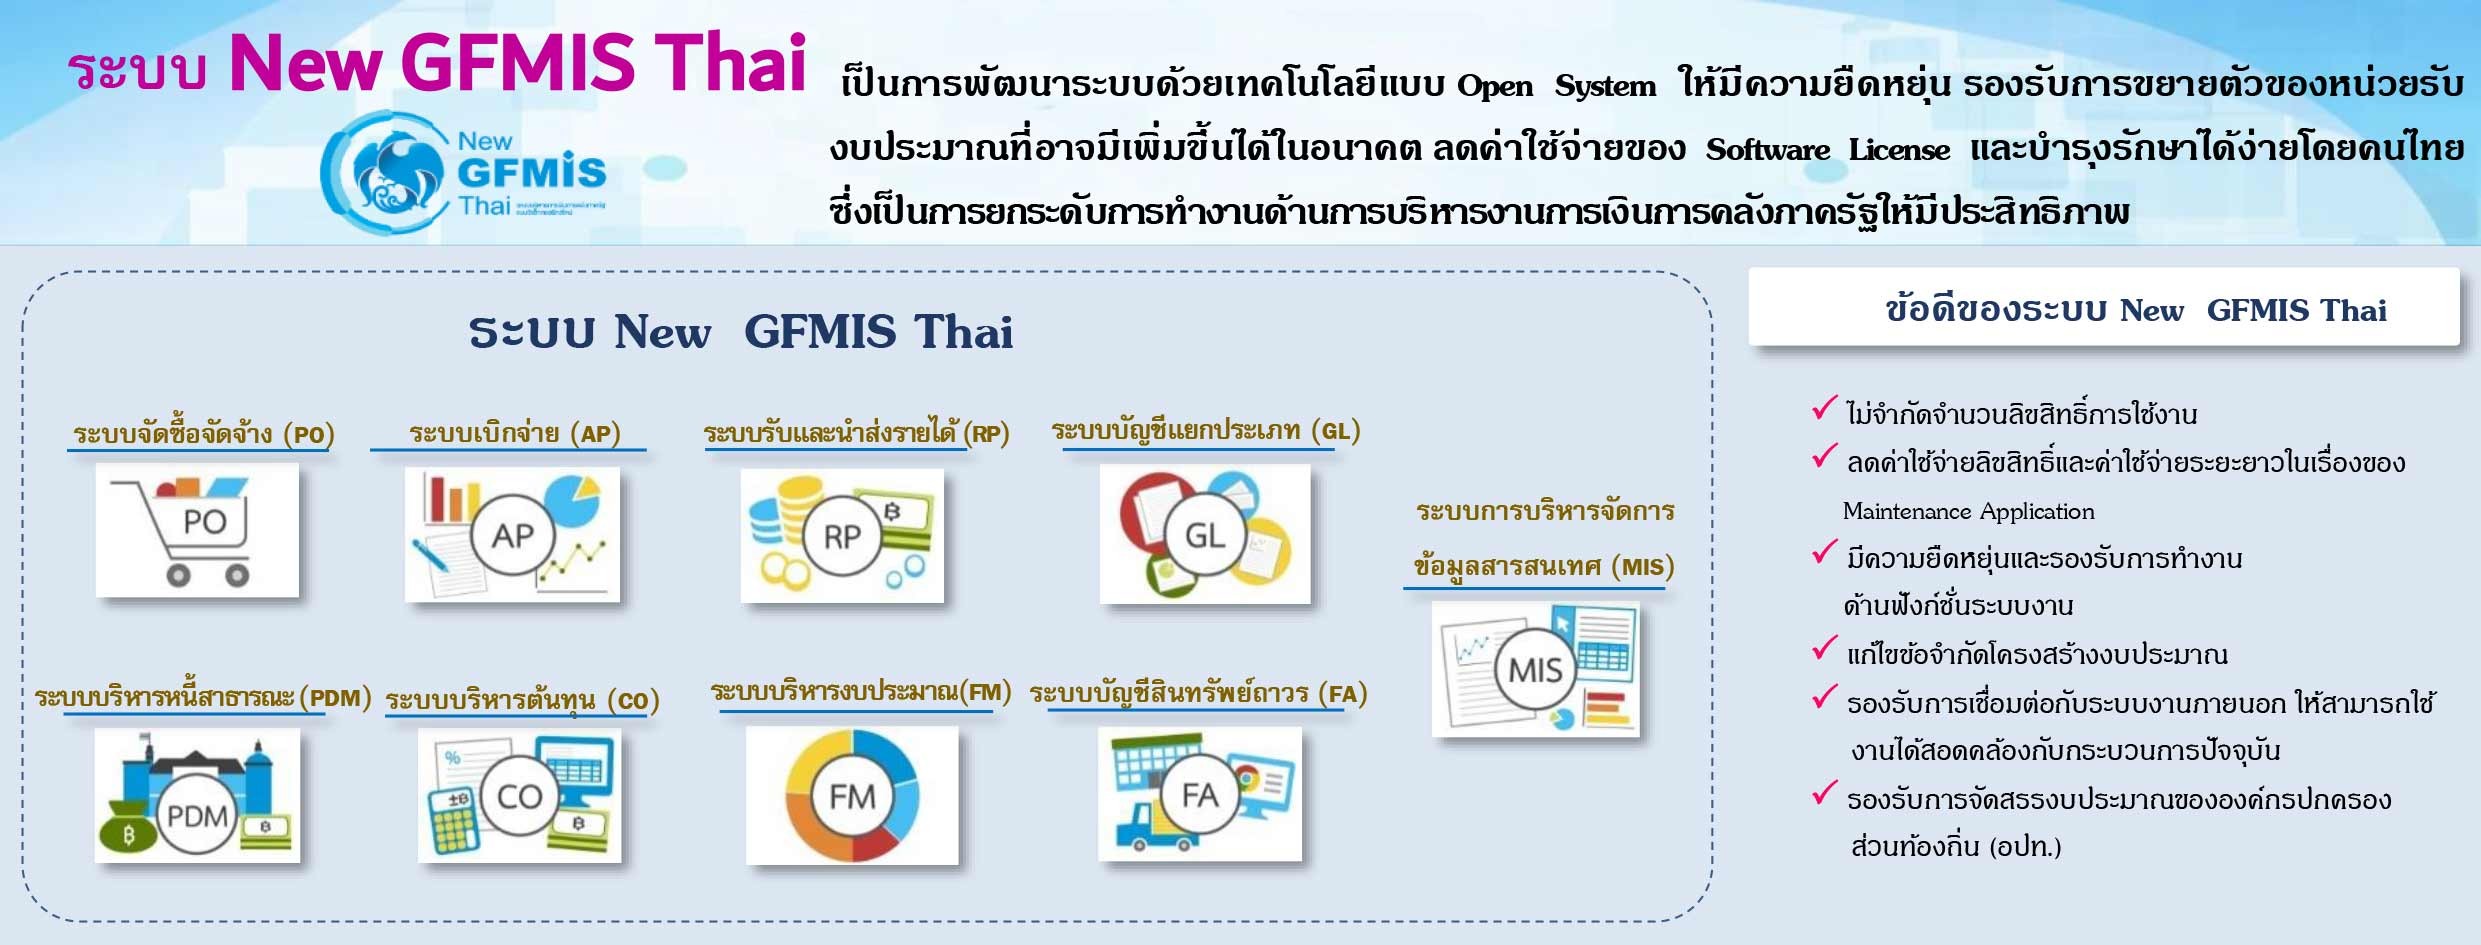 ระบบ New GFMIS Thai